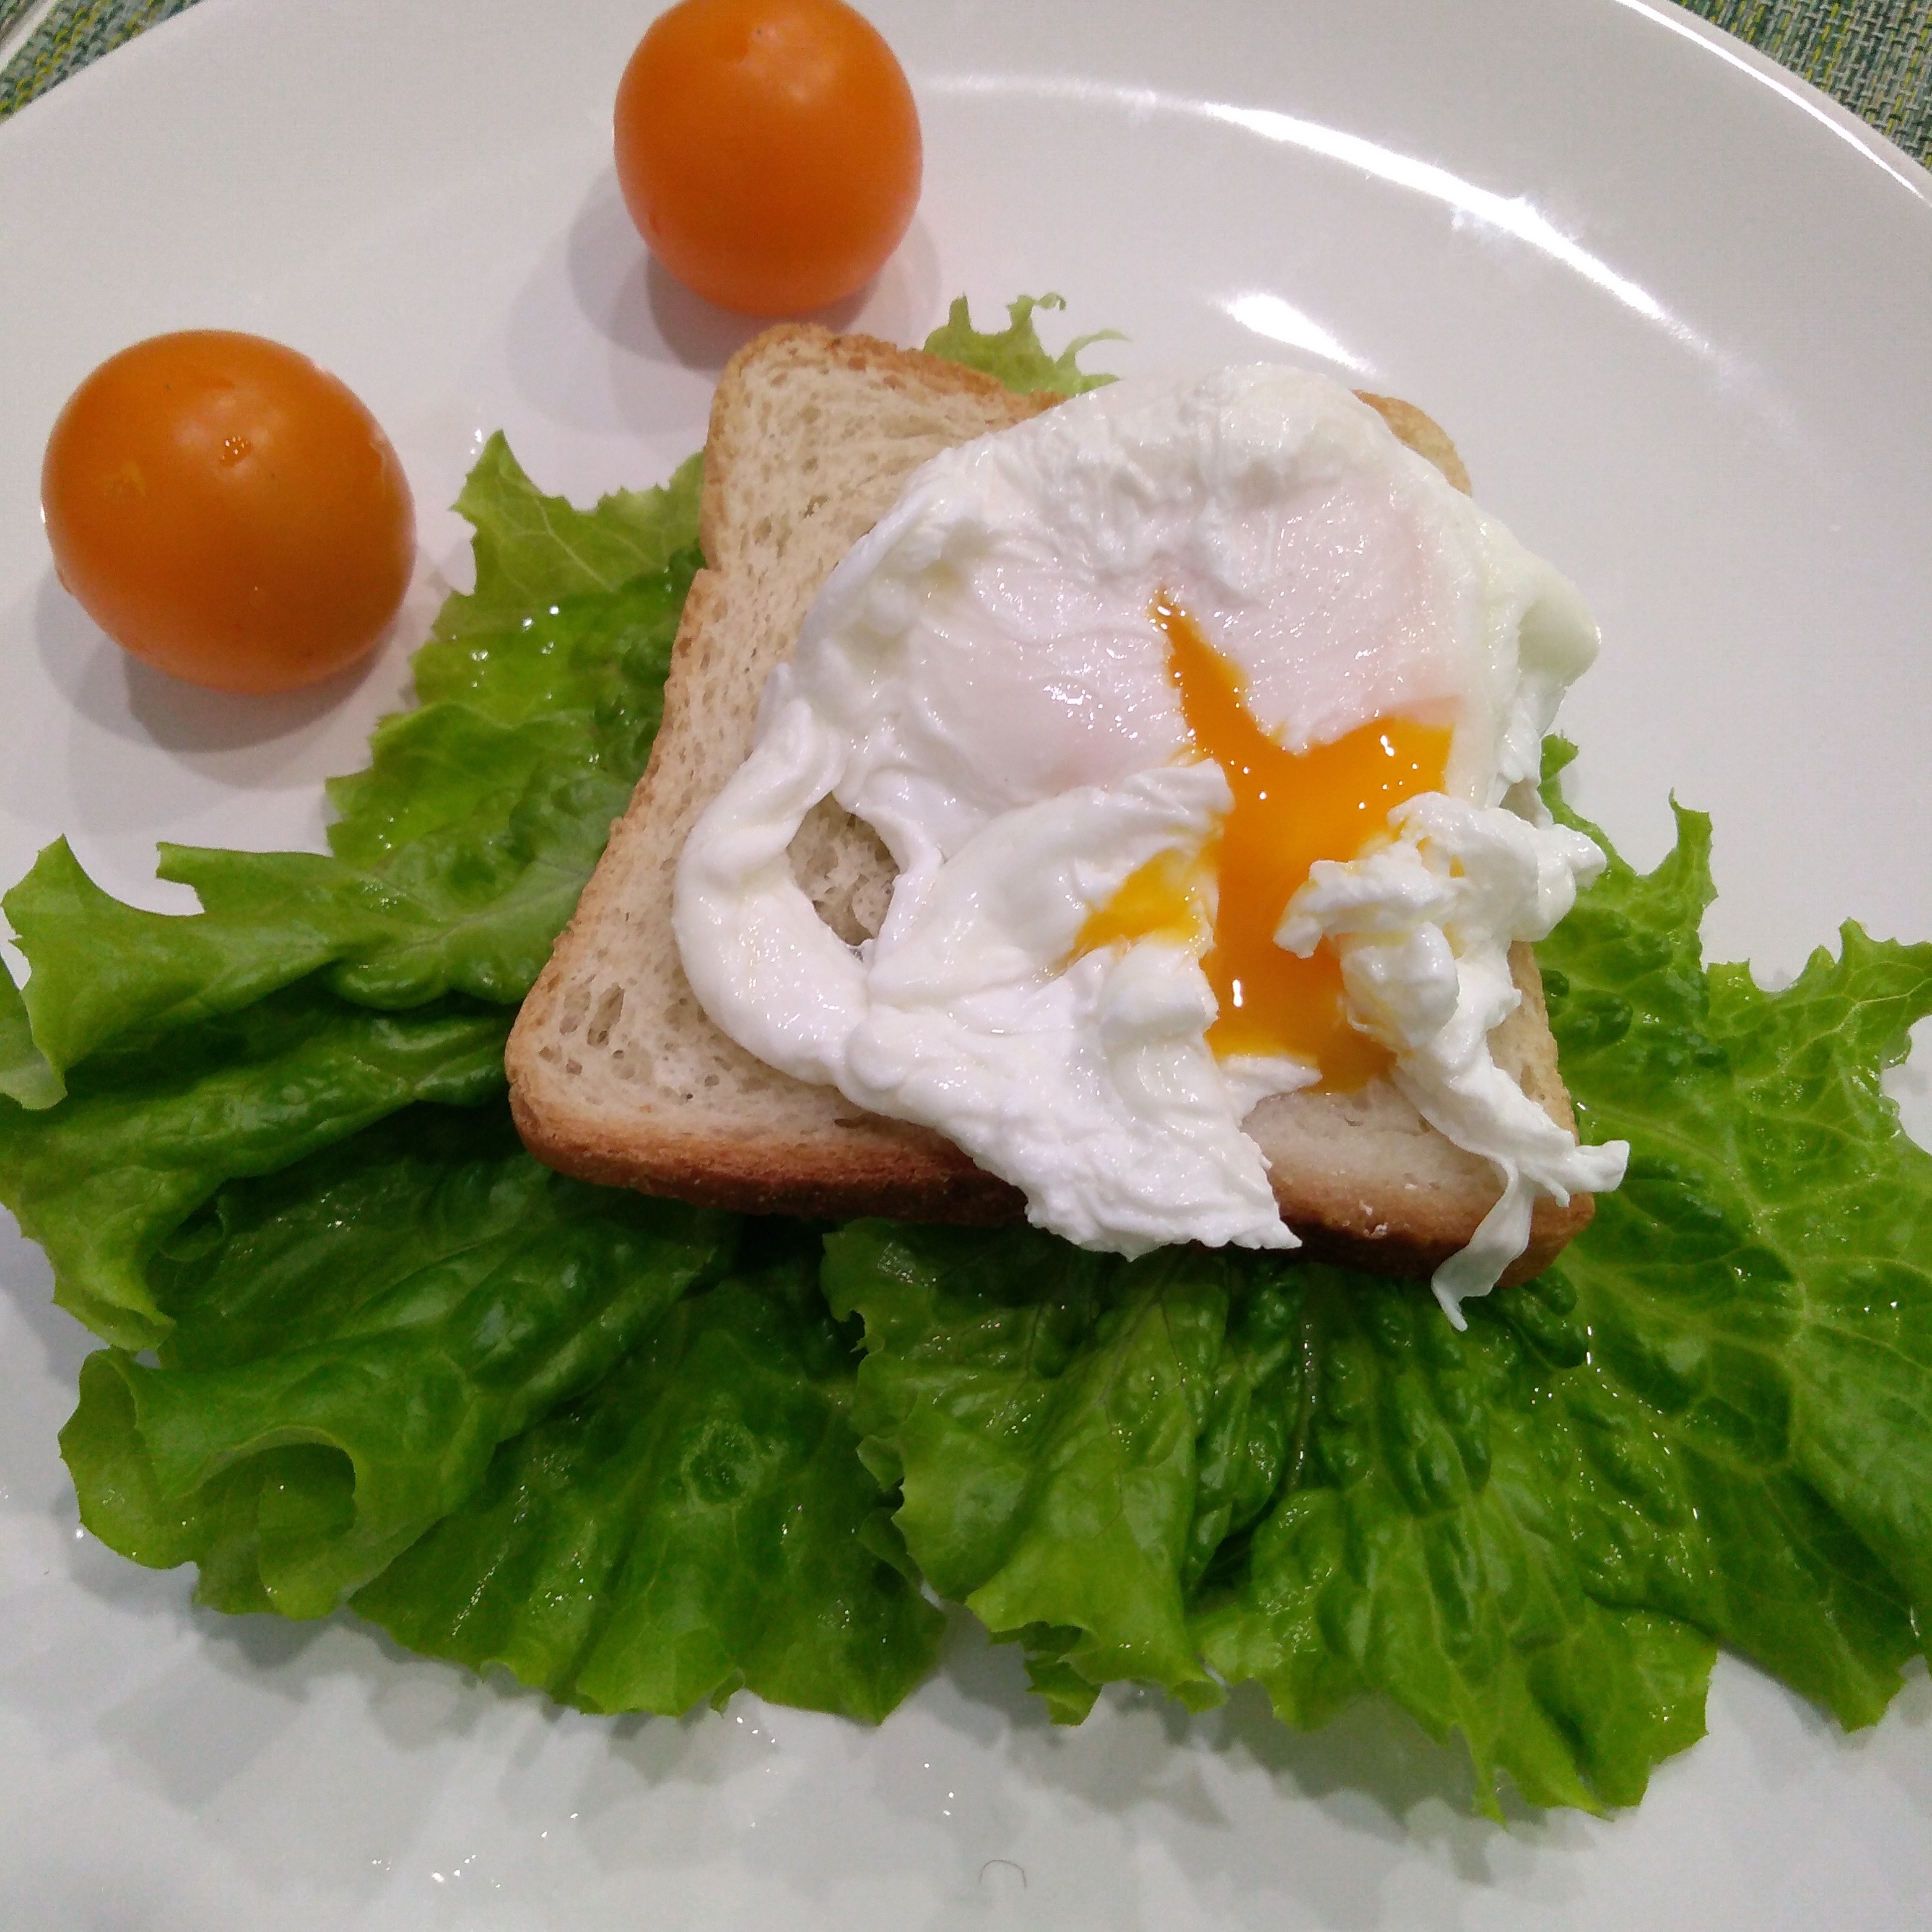 Яйца пашот (два способа приготовления)